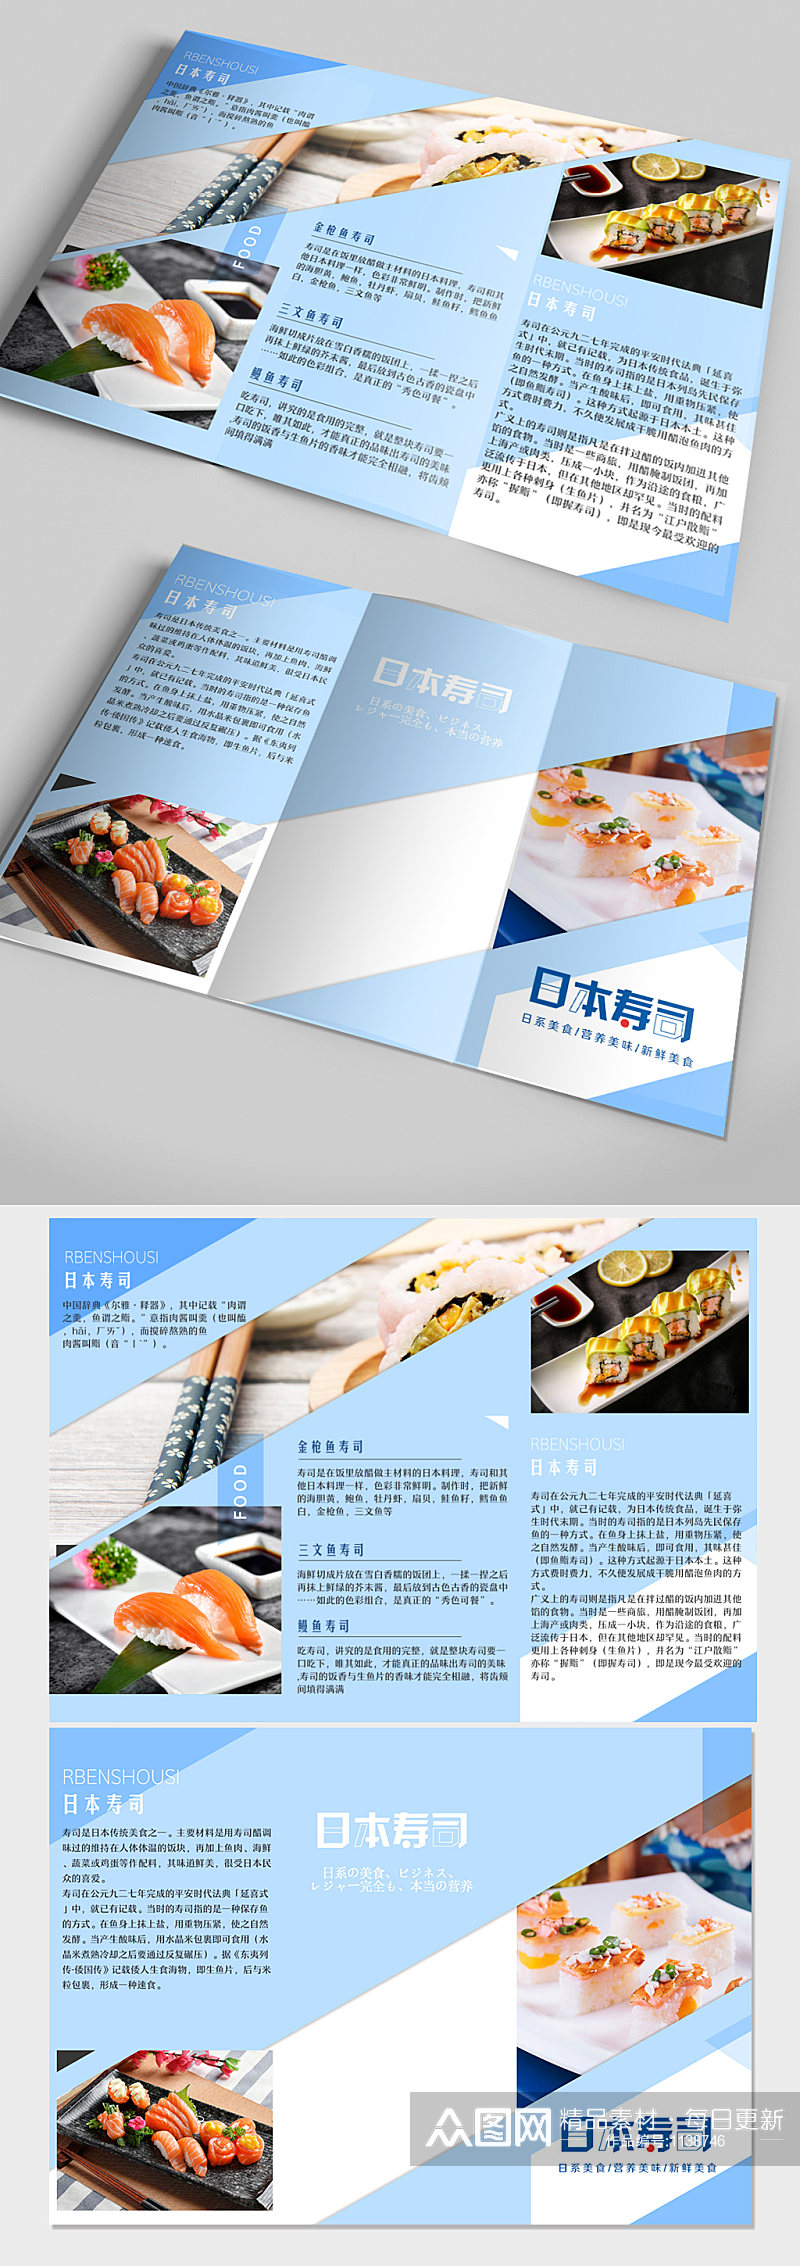 寿司店美食餐厅三折页素材